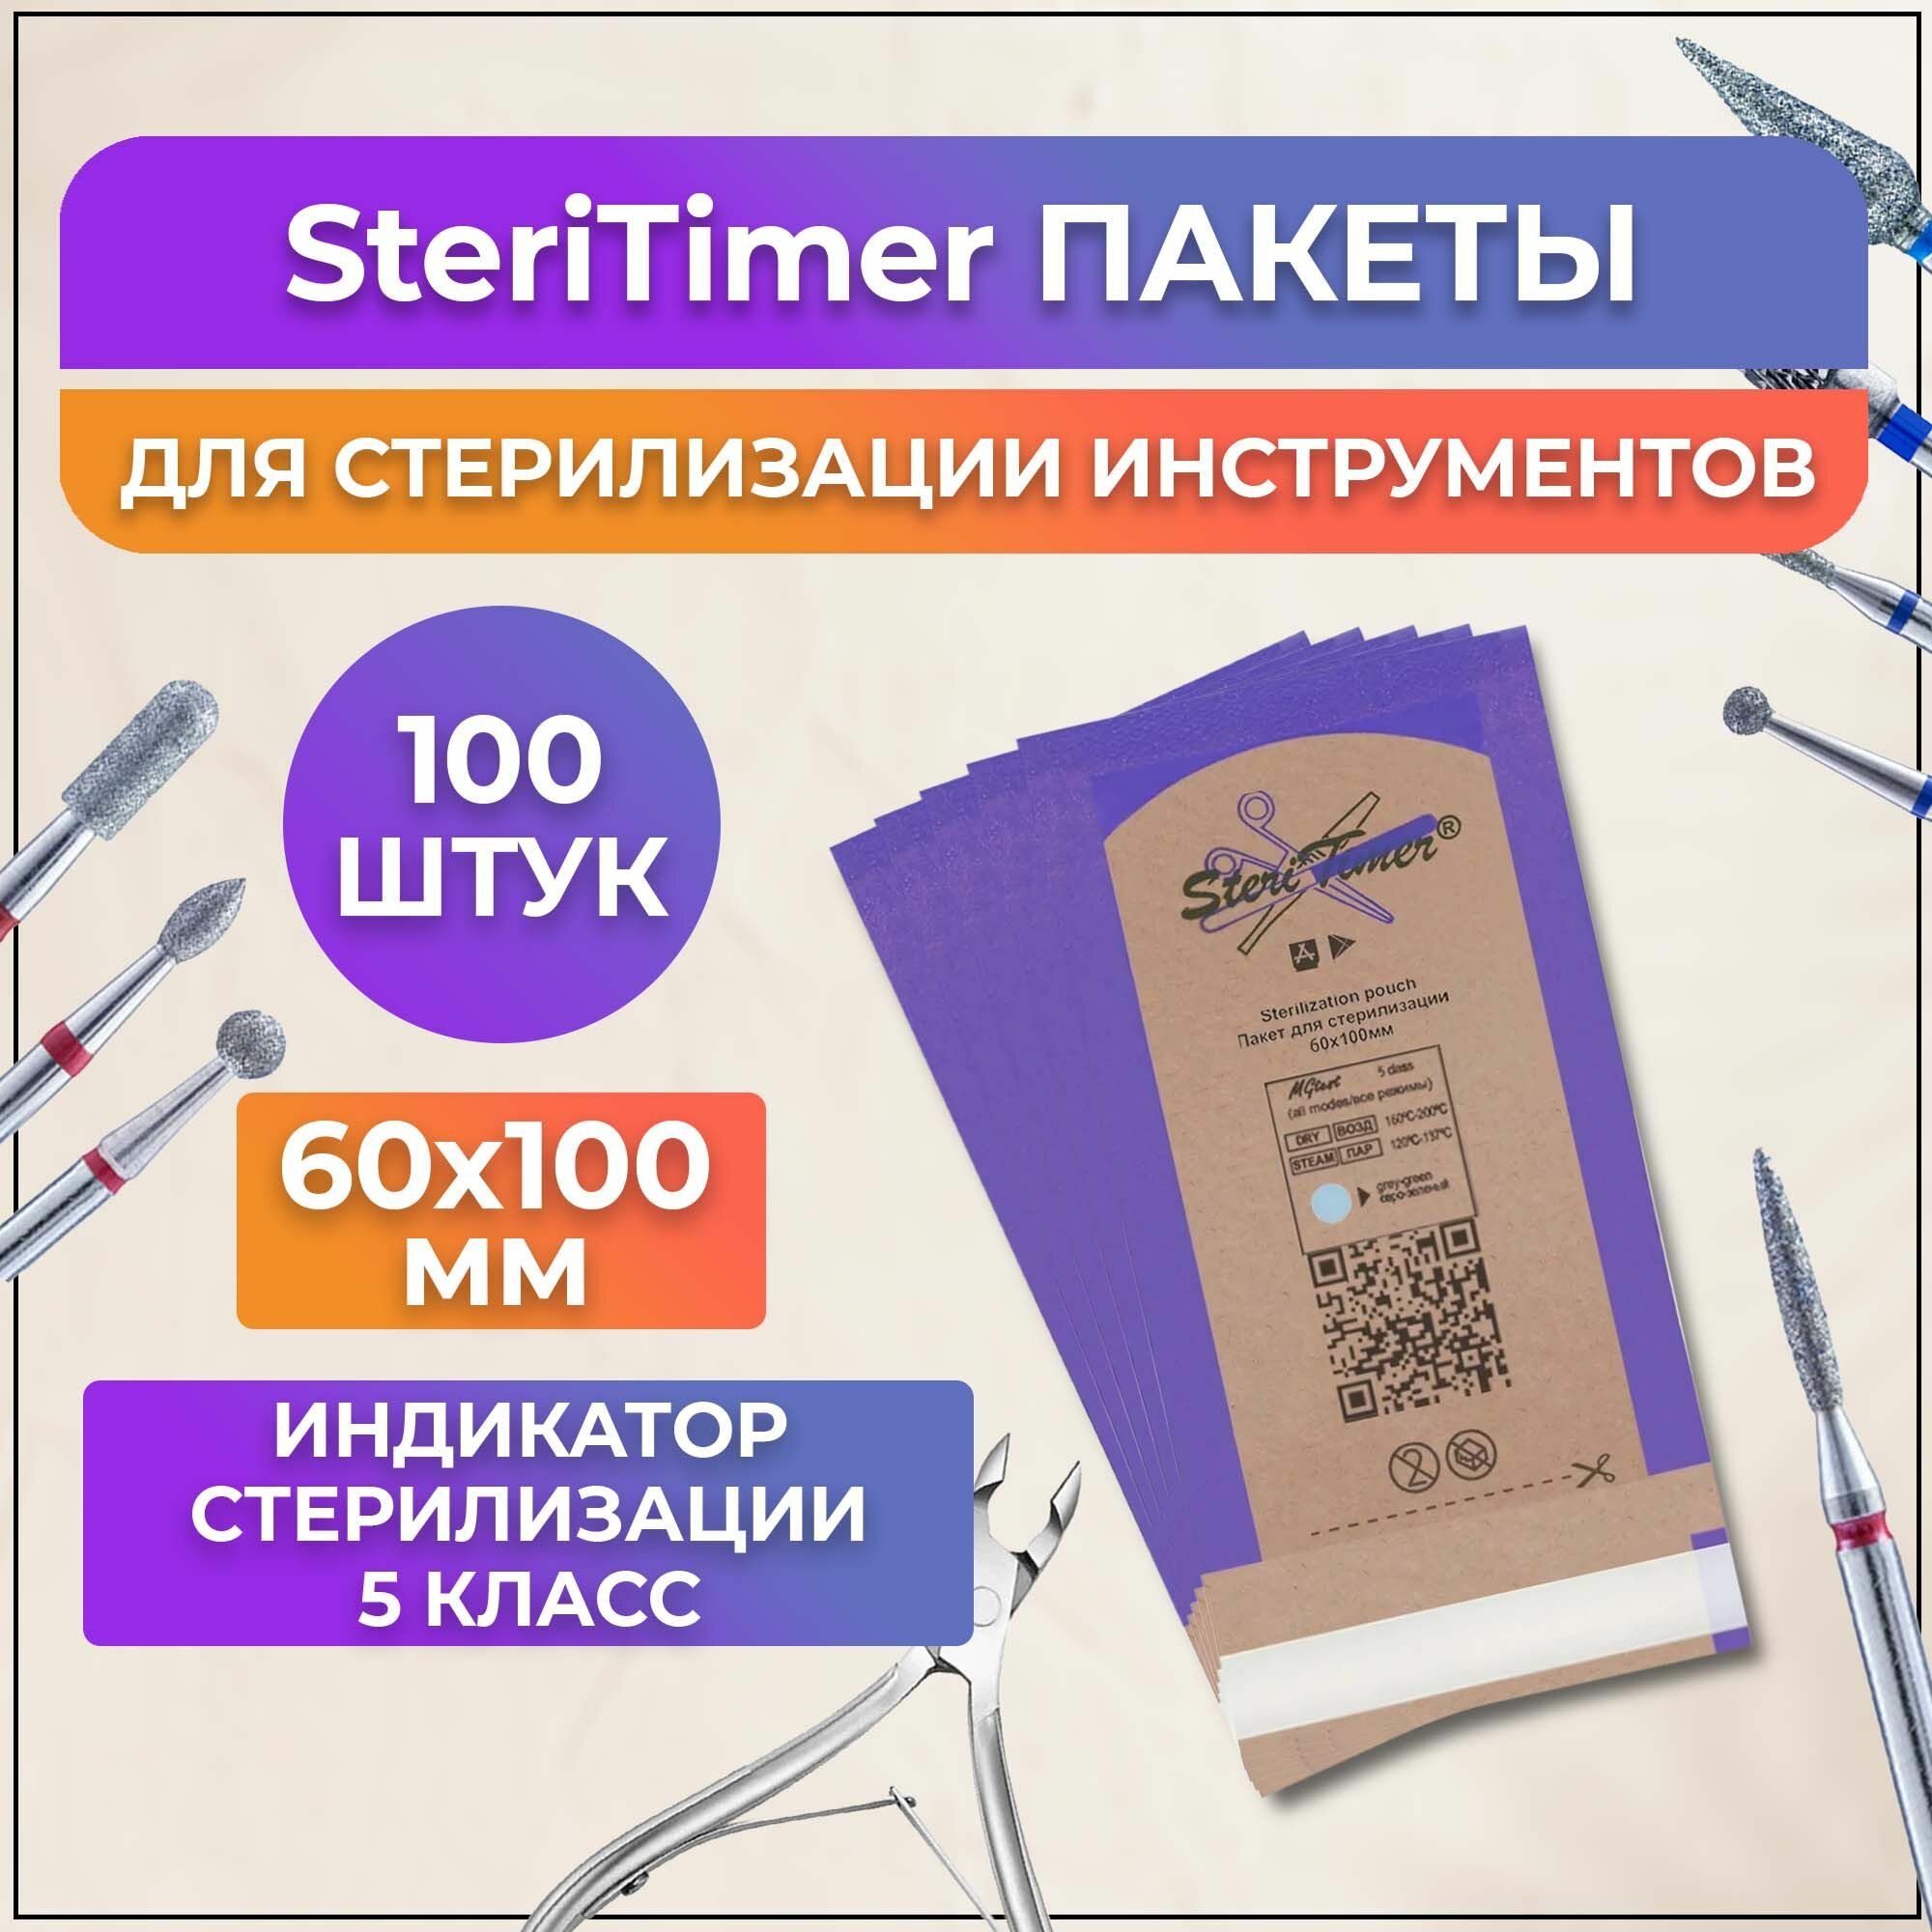 SteriTimer пакеты 60*100мм 100шт для стерилизации инструментов